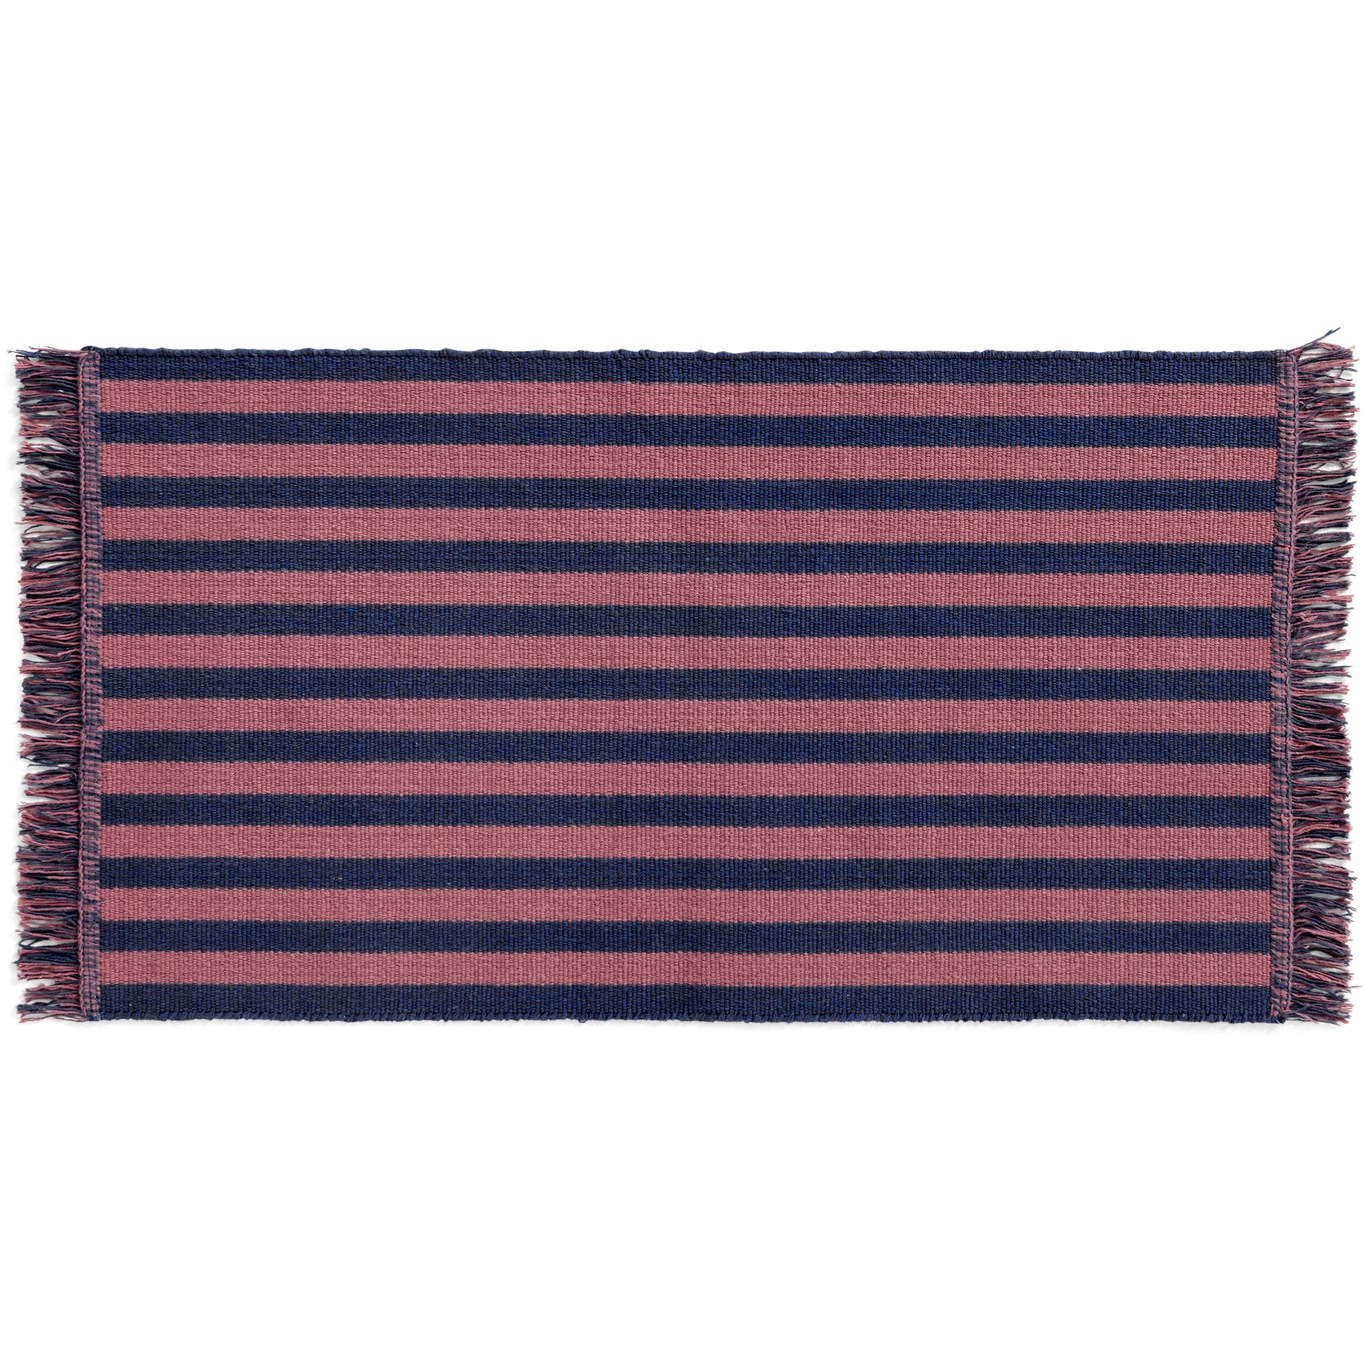 Stripes and Stripes Dørmåtte 52x95 cm, Navy Cacao